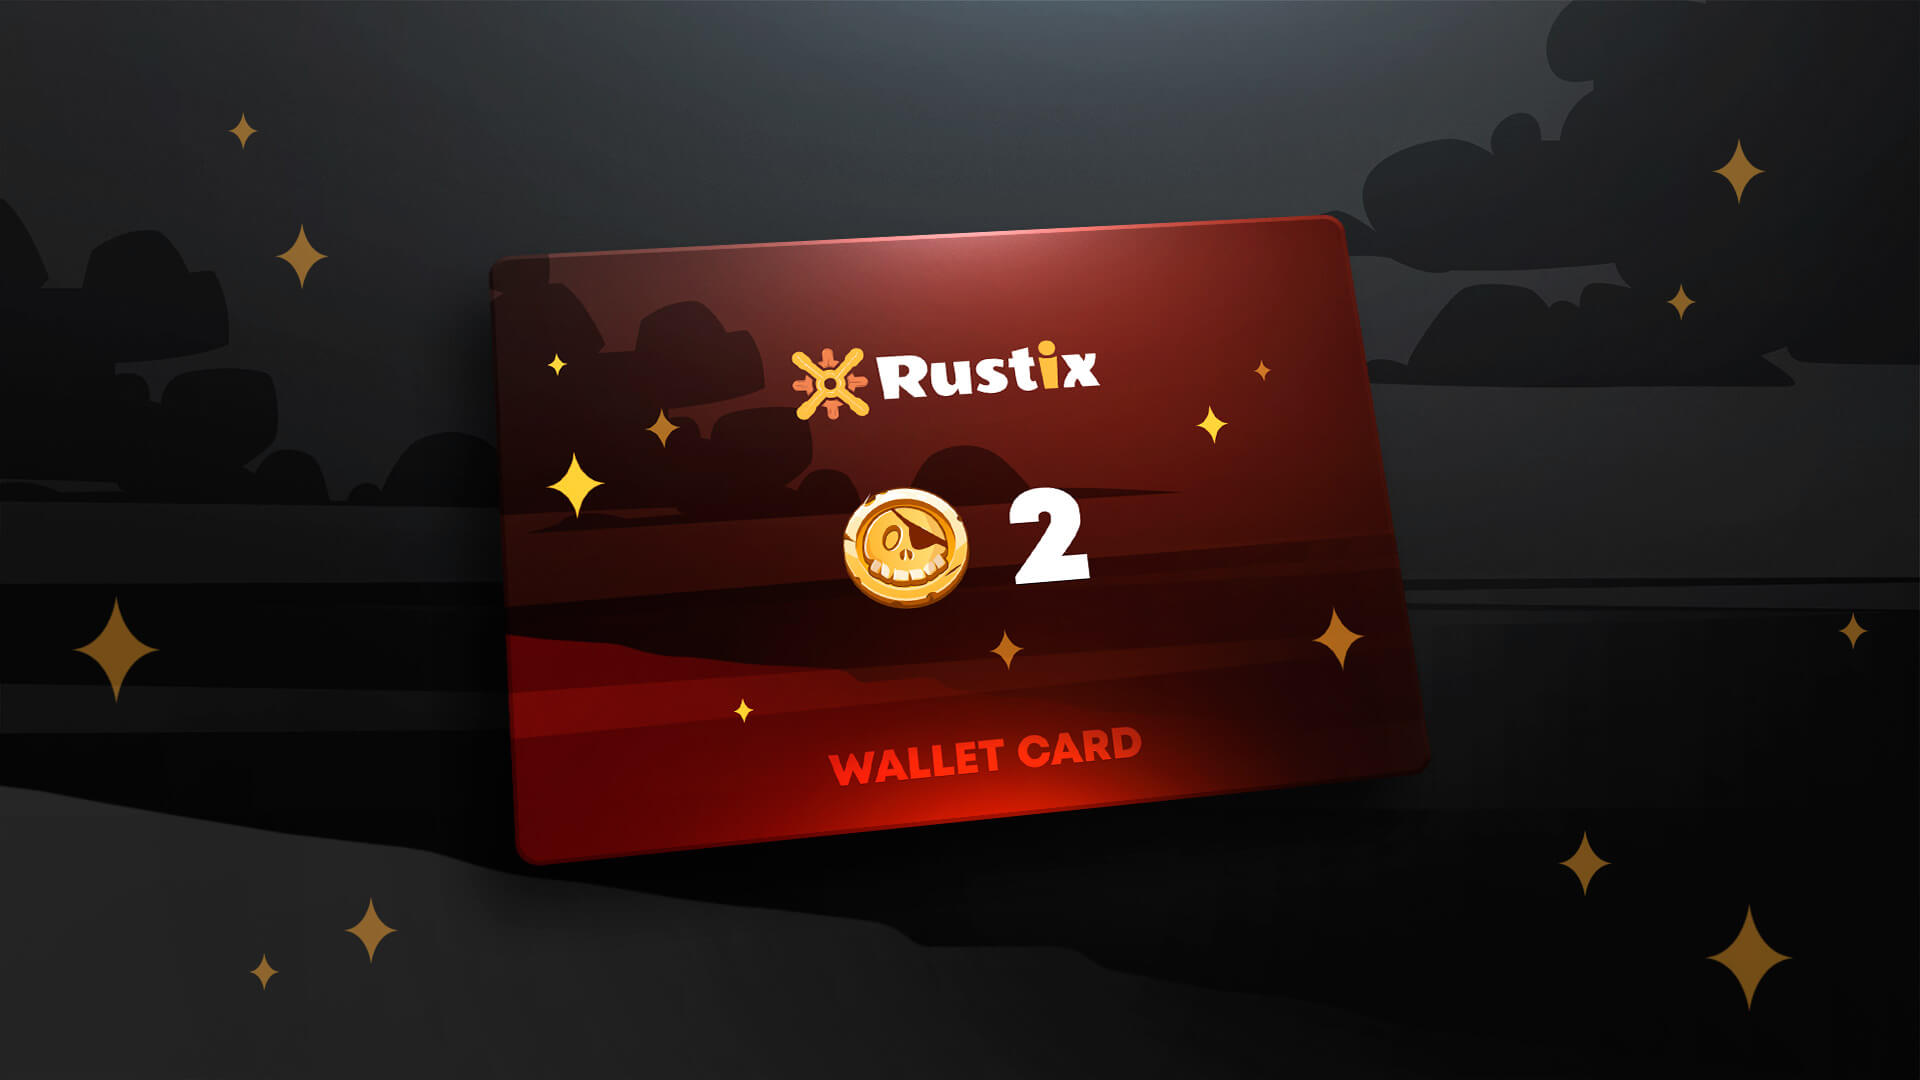 Rustix.io 2 USD Wallet Card Code 2.26 $